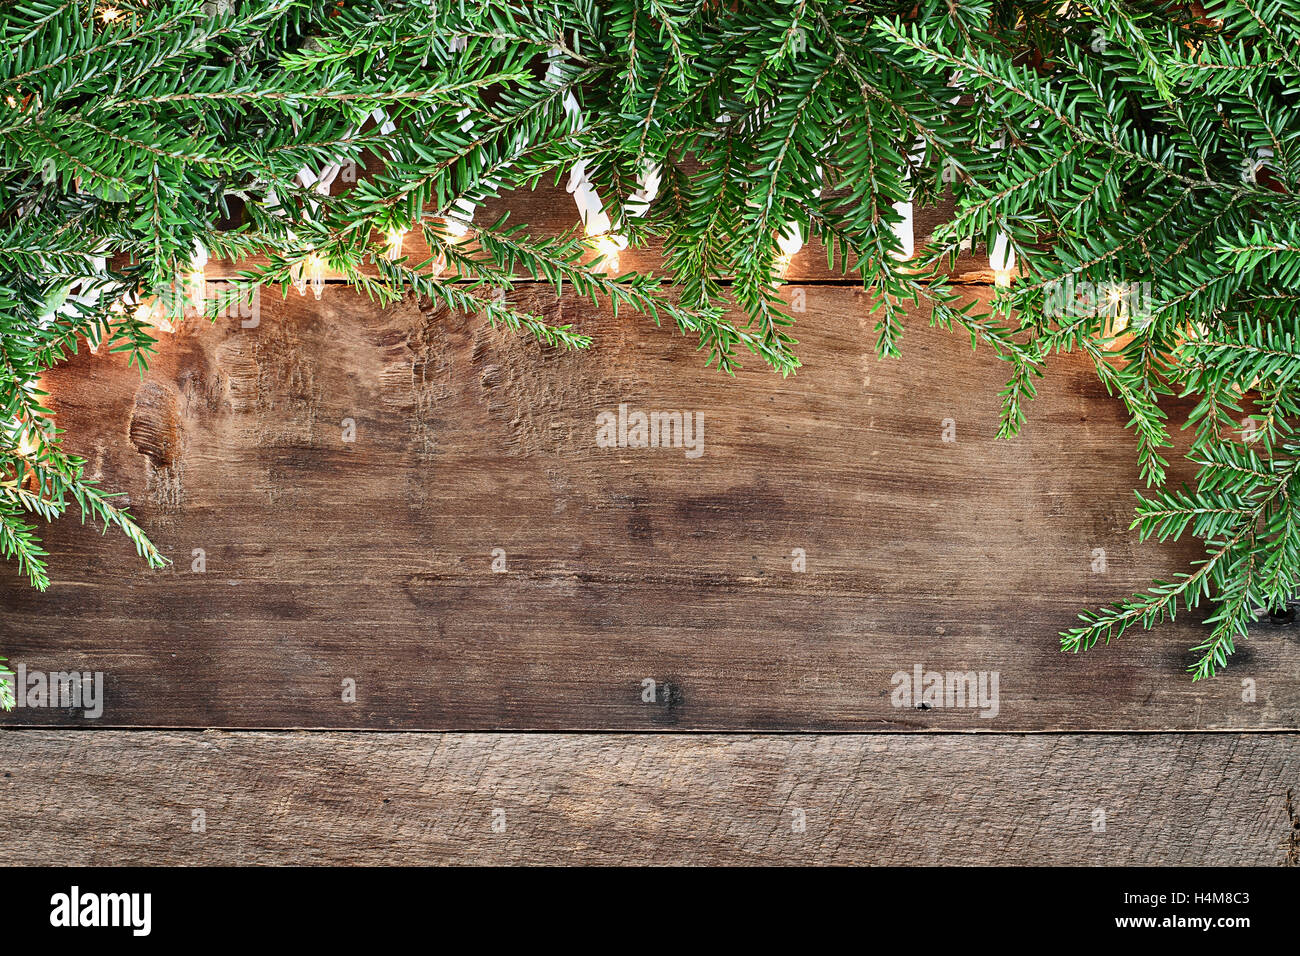 Arbre de Noël des branches de pins et des lumières décoratives sur un fond rustique en bois de grange. Droit coup de frais généraux. Banque D'Images